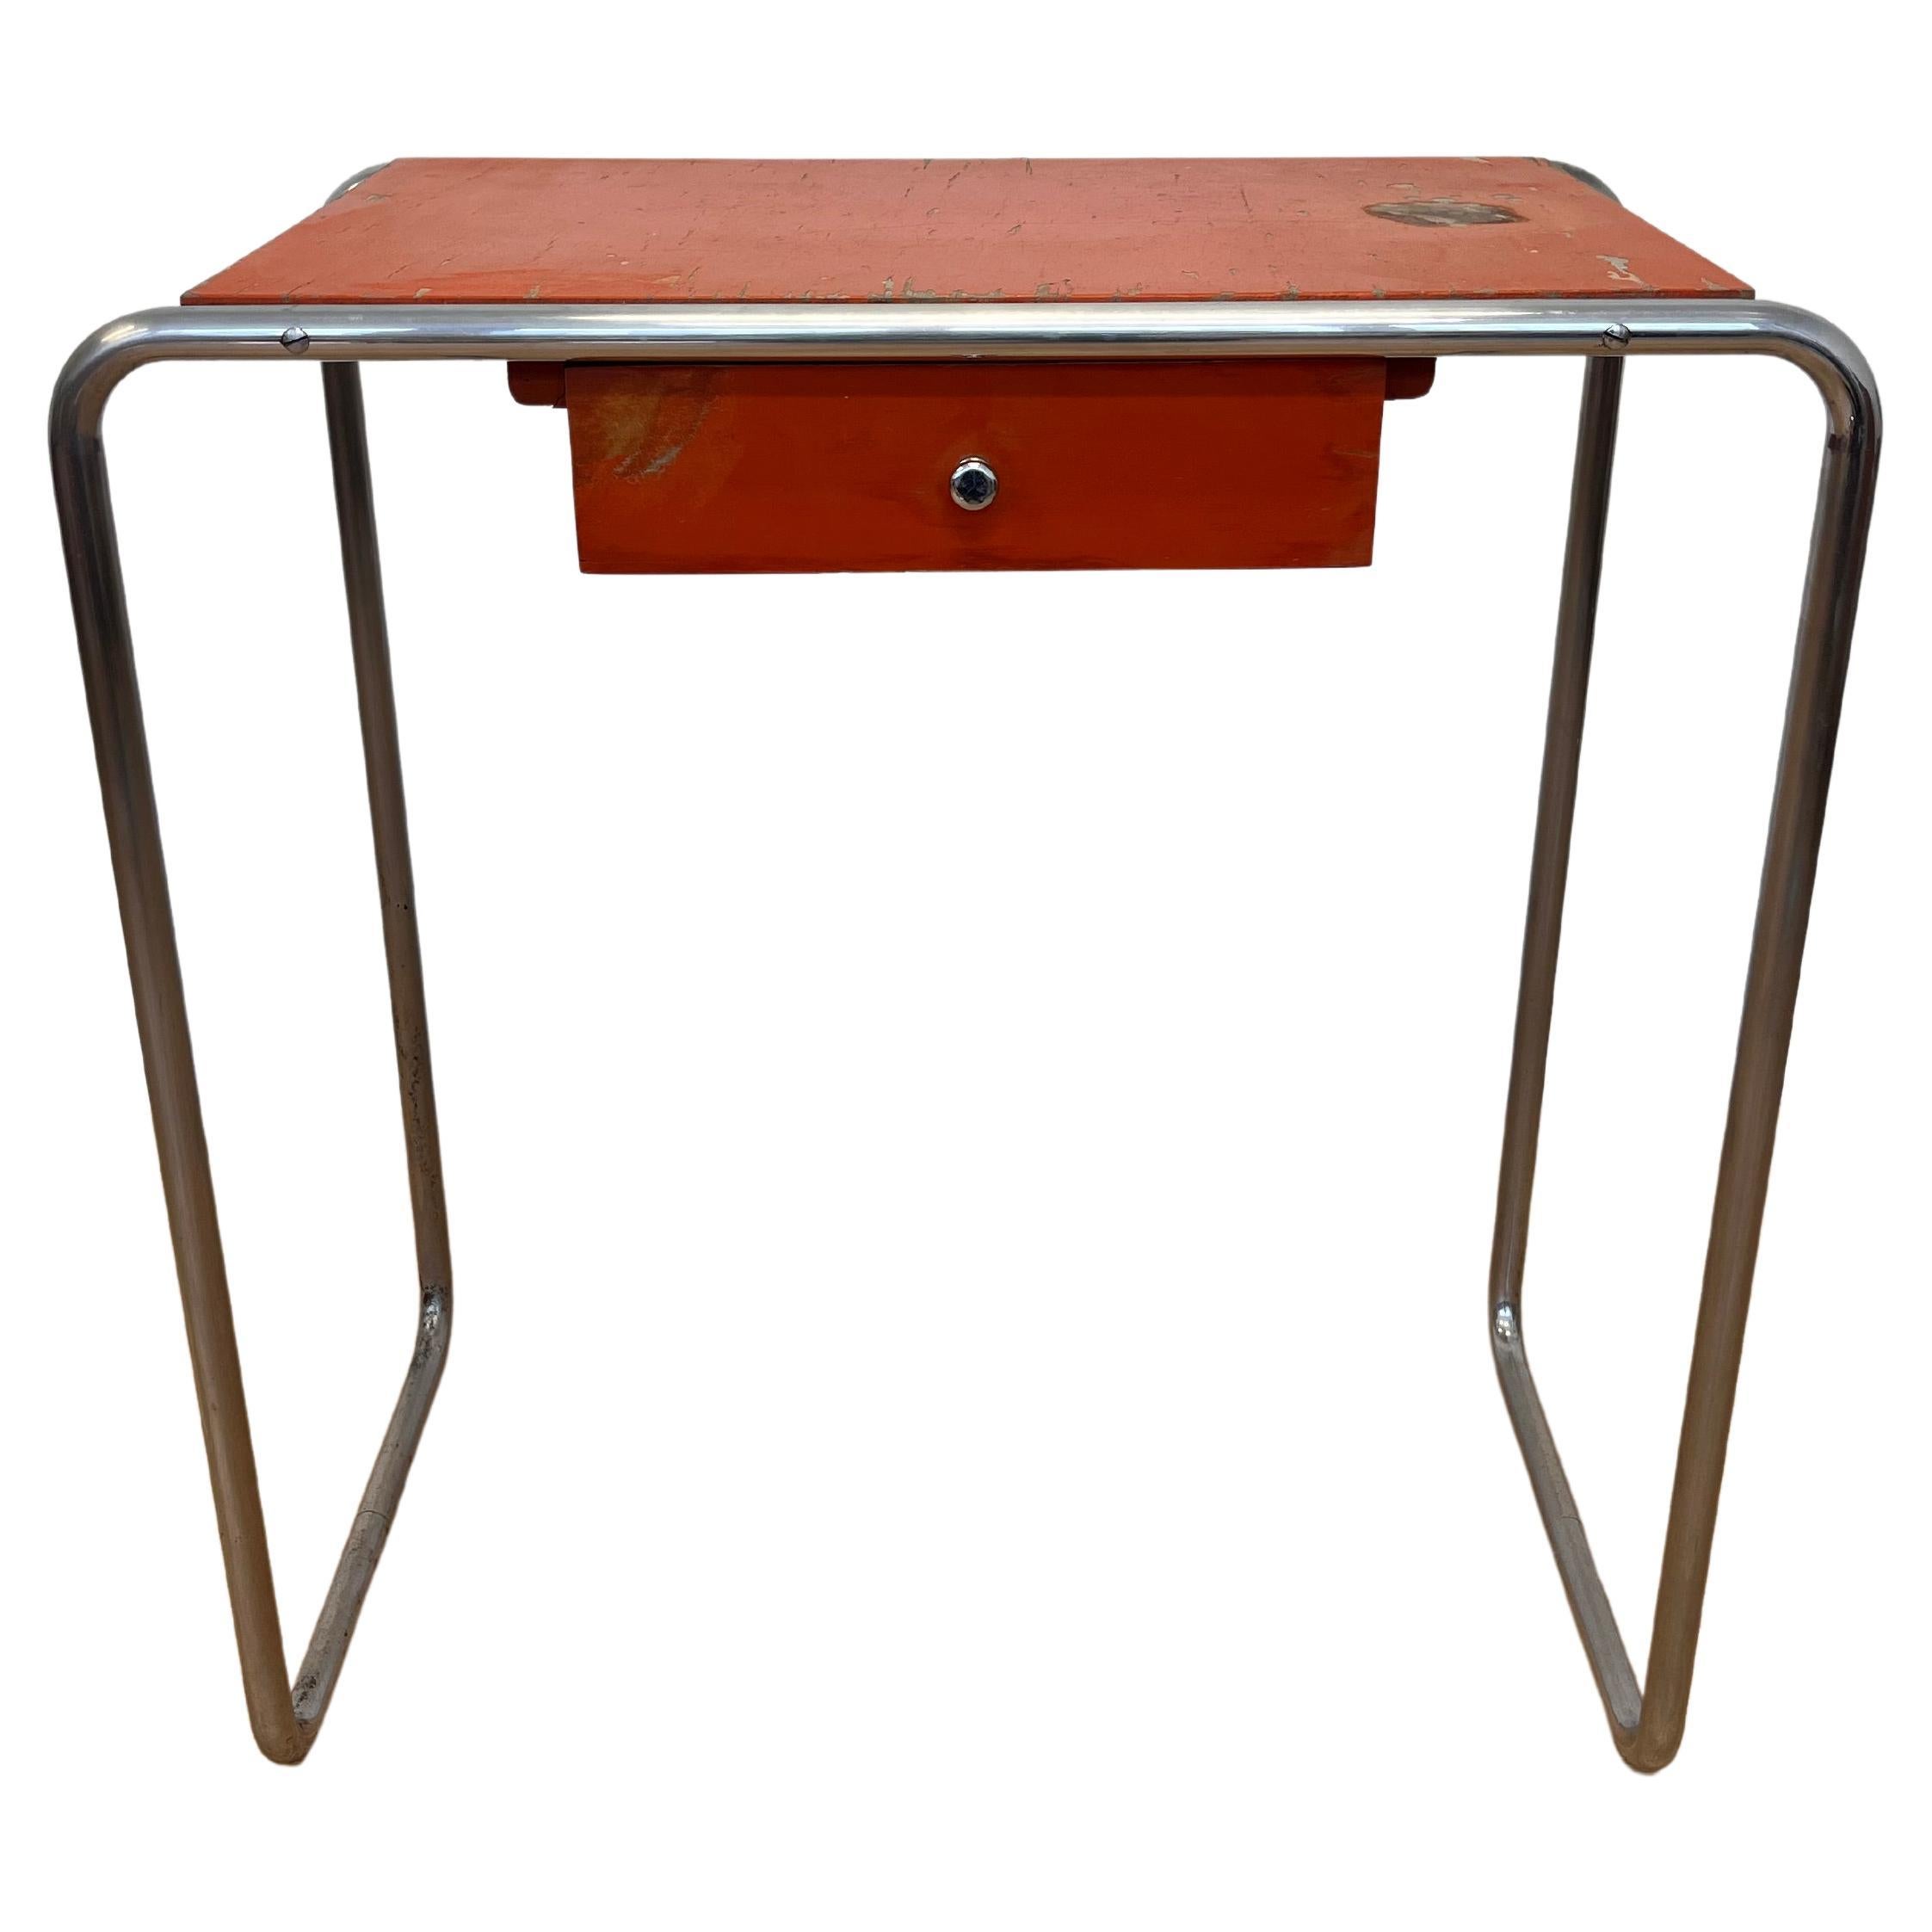 Bauhaus tubular steel Chrome Table model R12 by Robert Slezak - 1930s For Sale